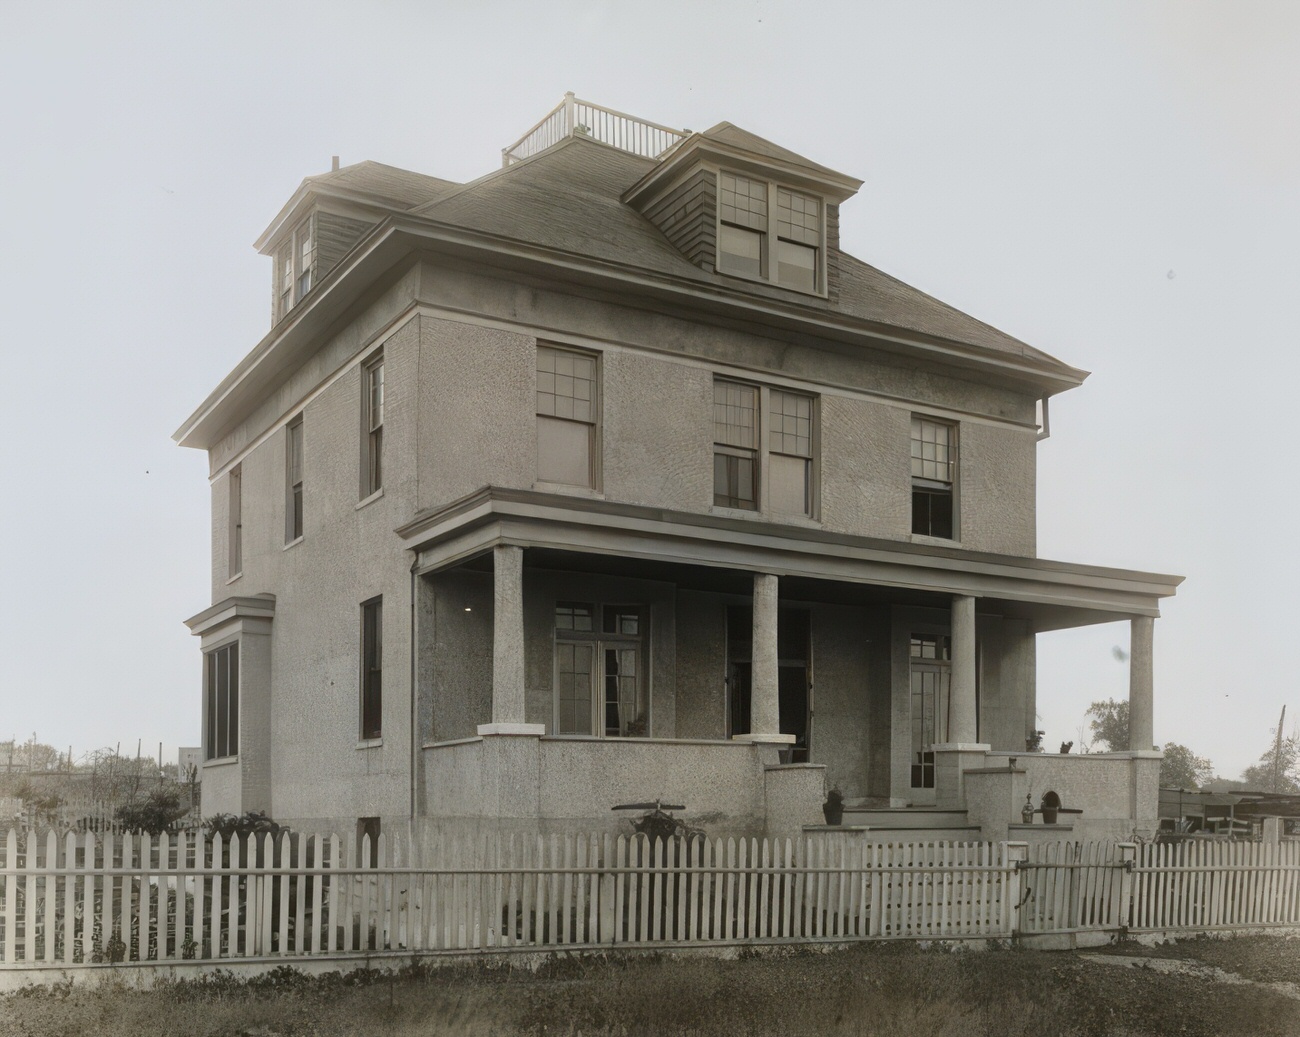 Underhill Avenue, Near Randall Avenue, Circa 1915.